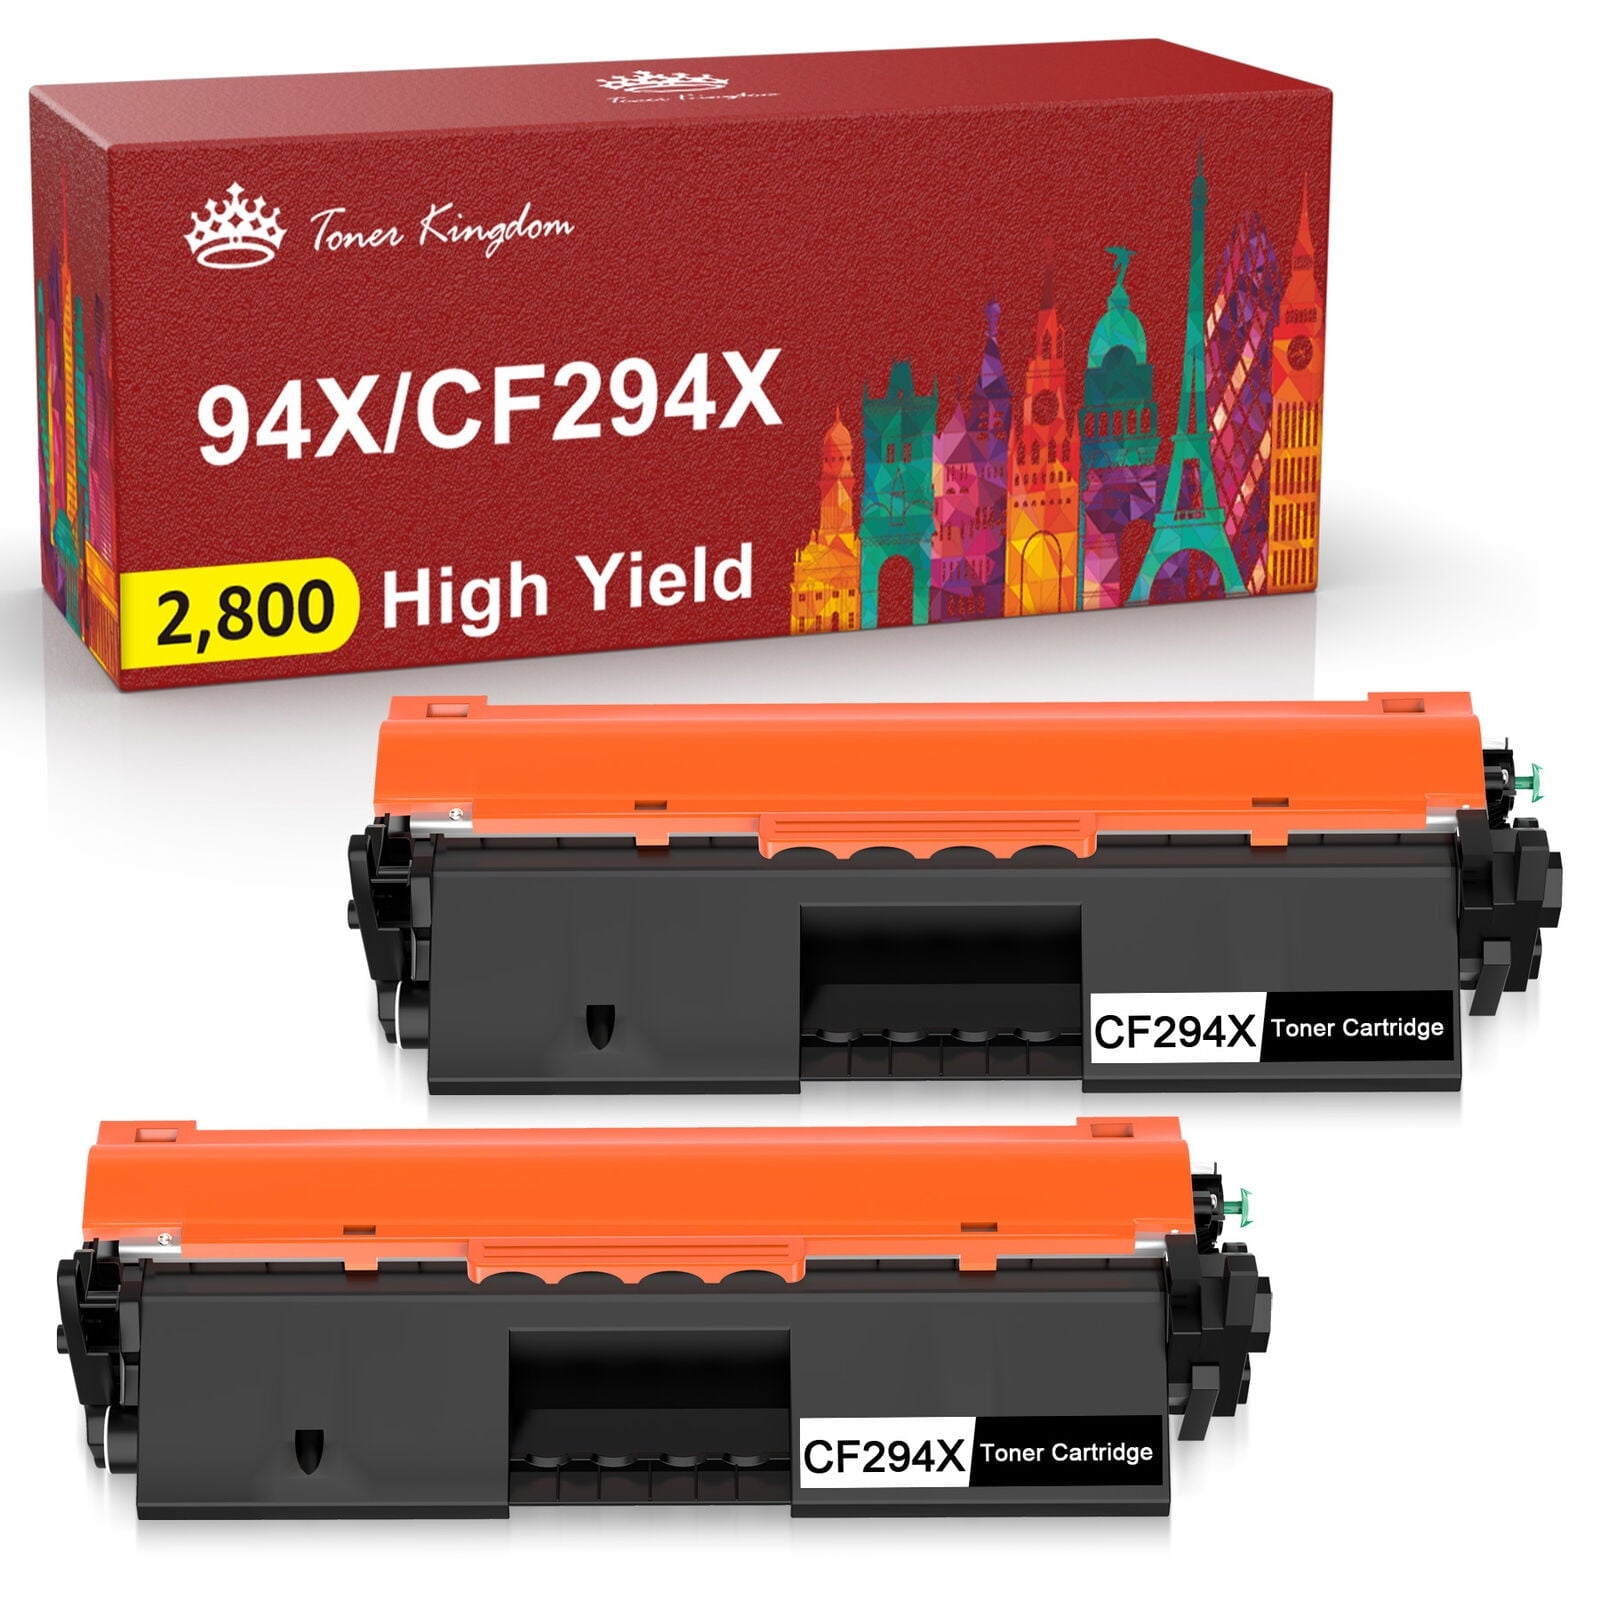 CF294X 94X Toner Cartridge Replacement for HP Printer (Black, 2-Pack)